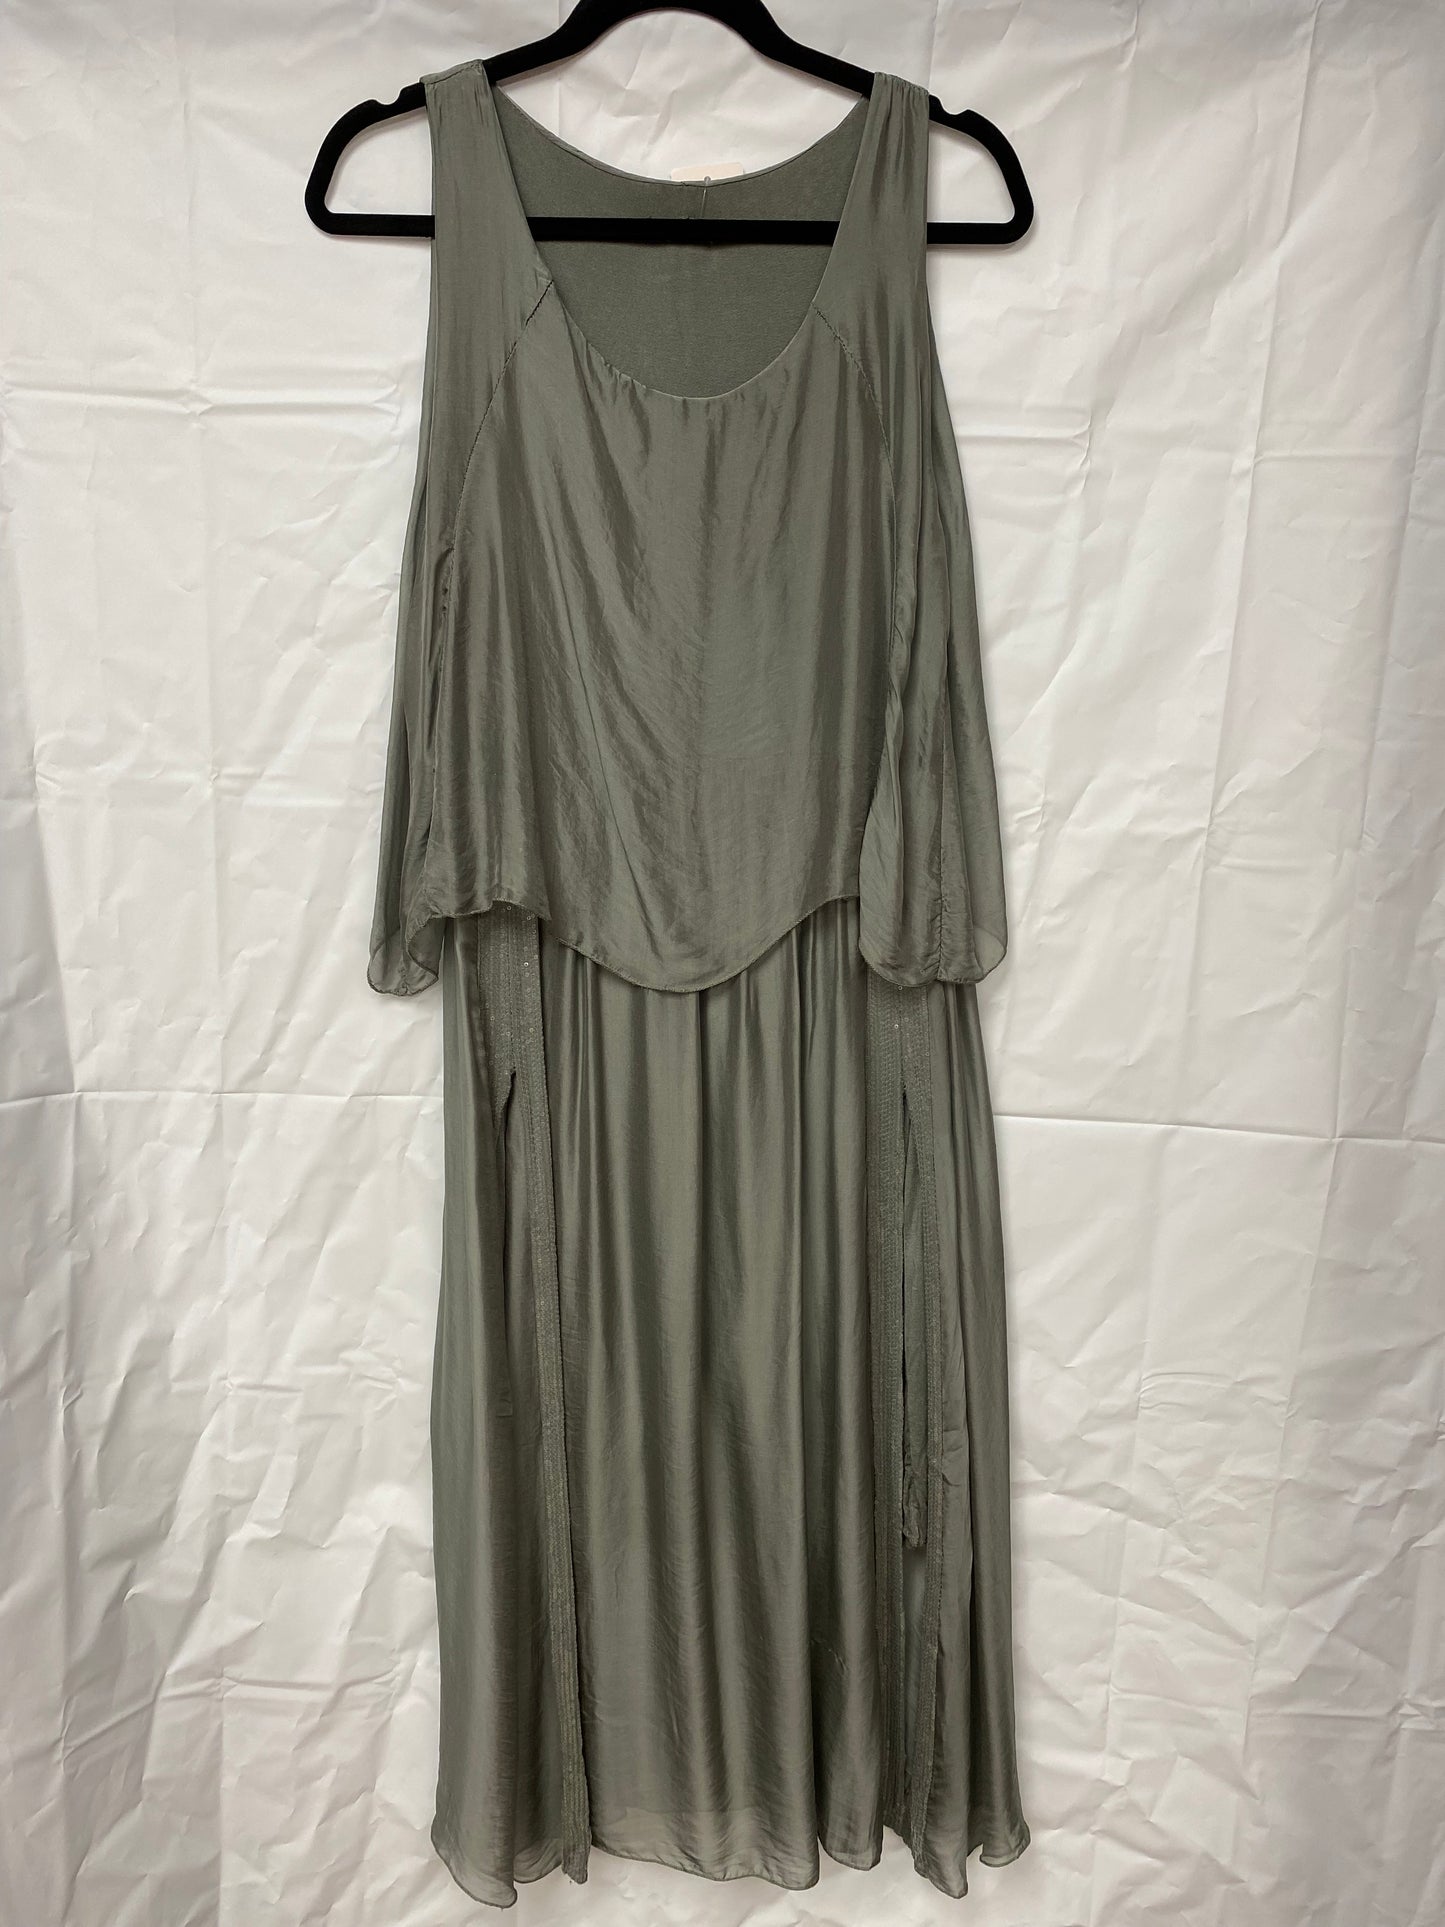 Italian silk overlay dress.